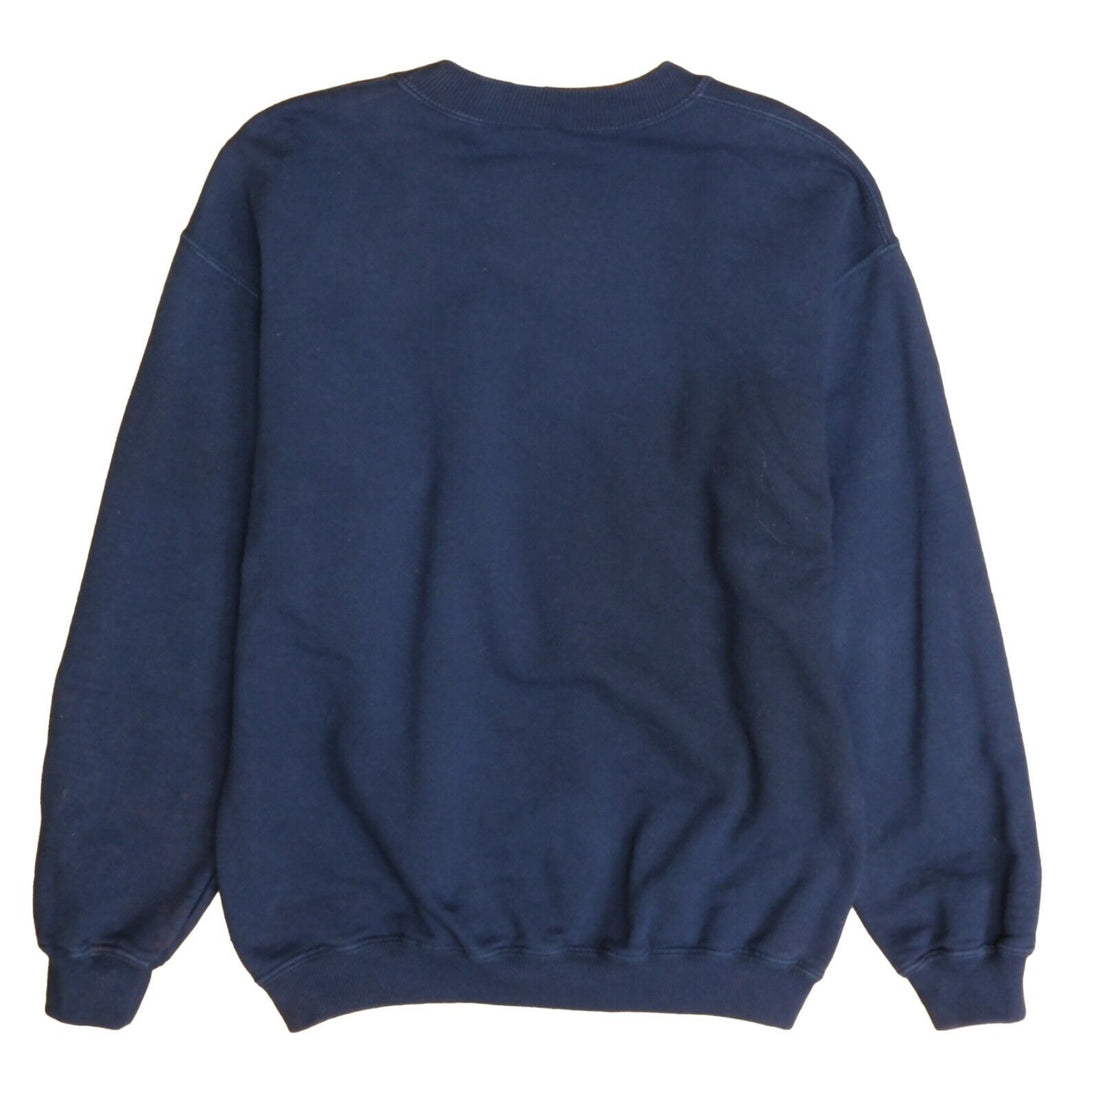 Vintage Nike Sweatshirt Crewneck Size Medium Blue Embroidered Swoosh 90s